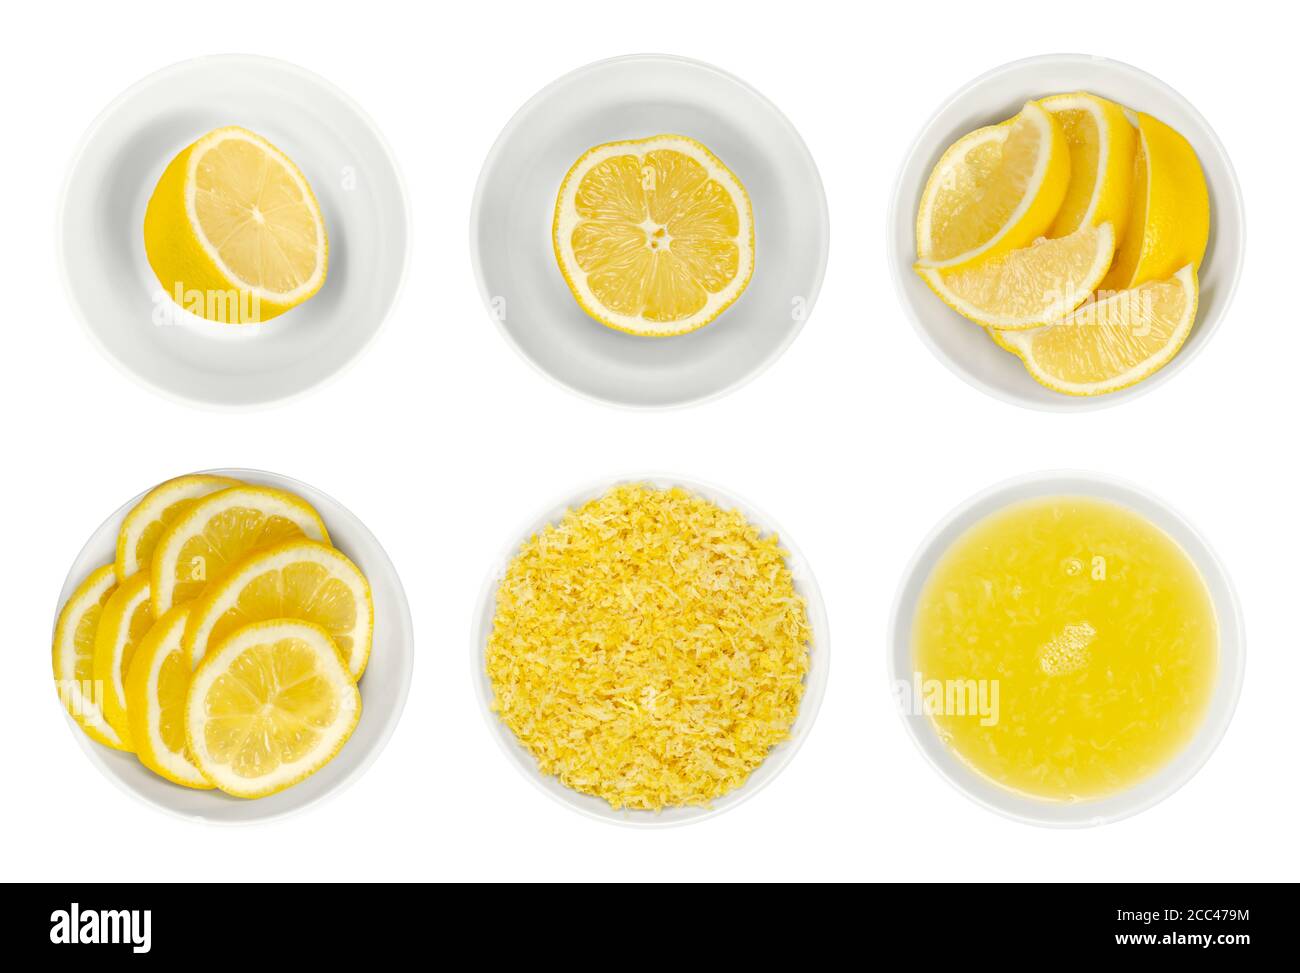 Citrons frais, coupés en deux, tranches et quartiers, zeste de citron et jus dans des bols en verre blanc. Agrumes mûrs et jaunes, utilisés pour la cuisine et le nettoyage Banque D'Images